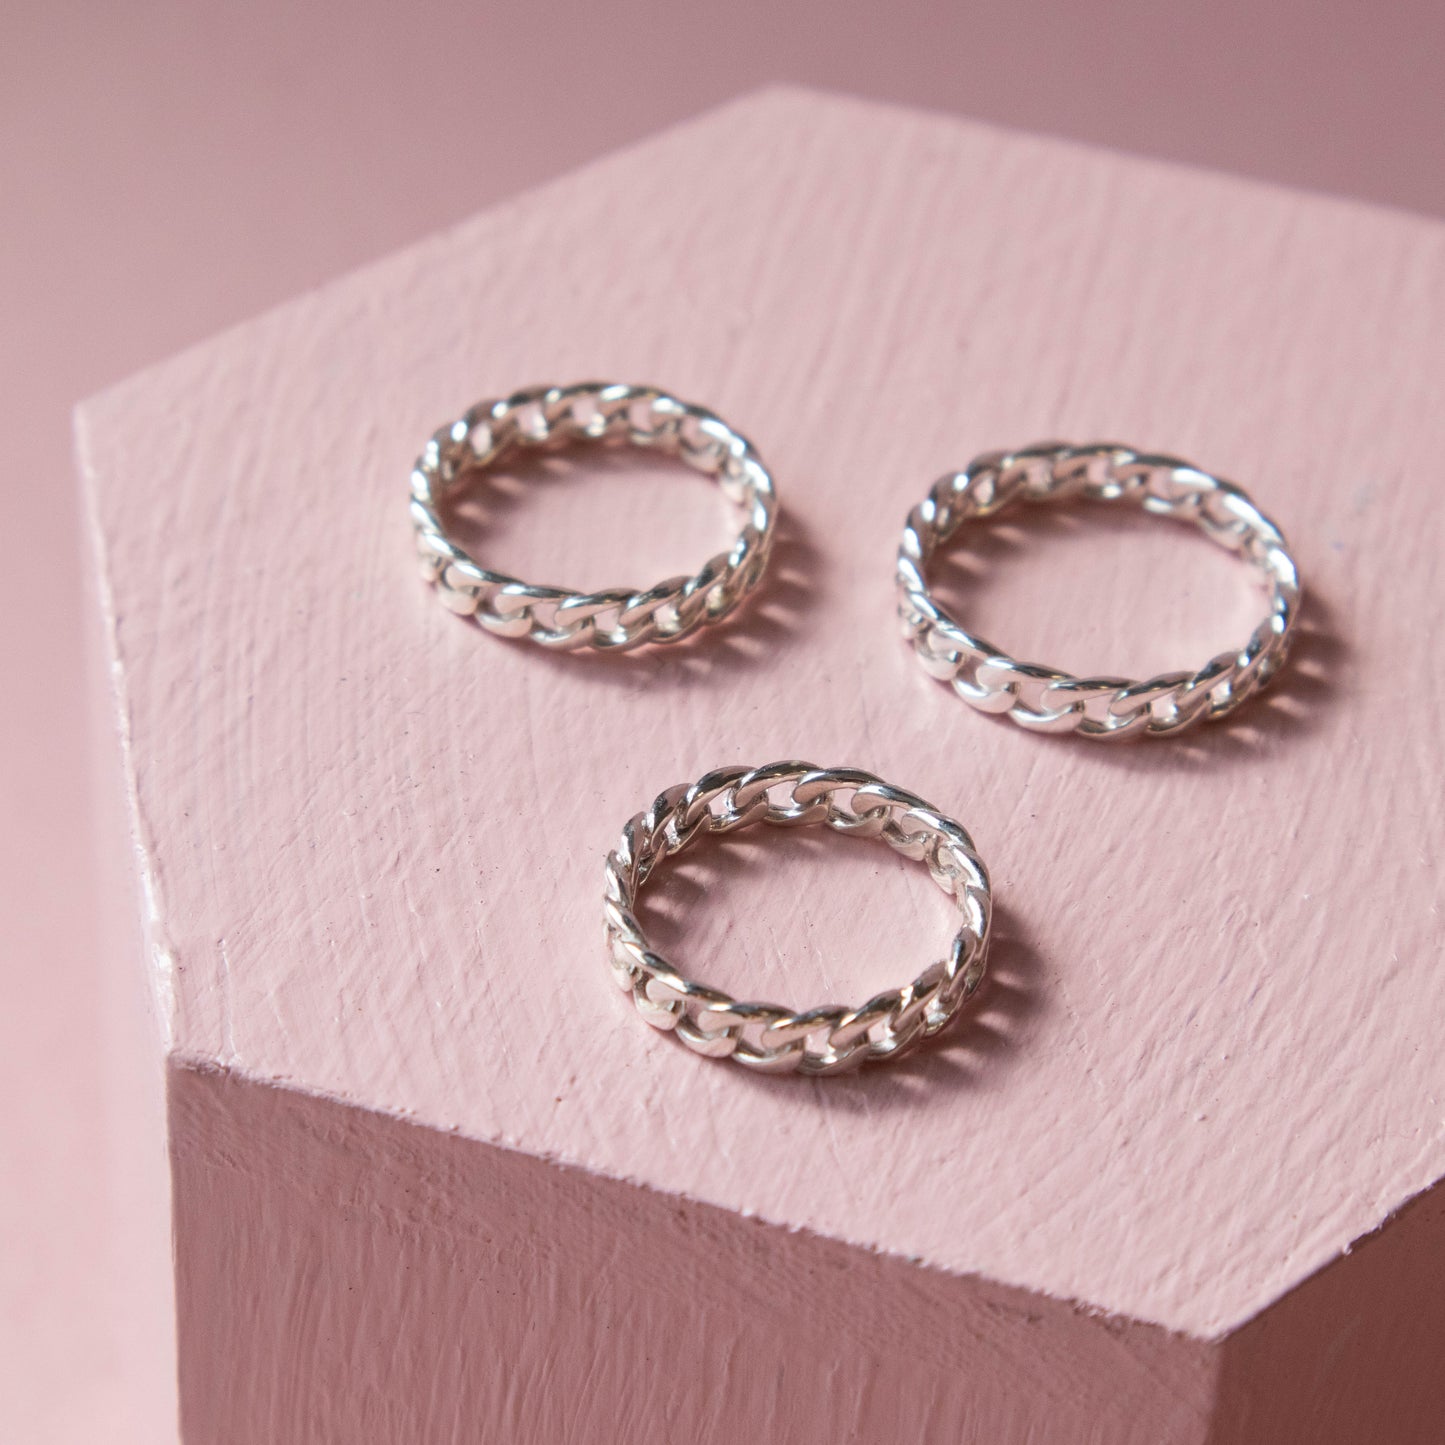 sterling silver, silver, silver ring, sterling silver ring, sterling silver jewelry, flat curb chain linked ring, chain linked ring